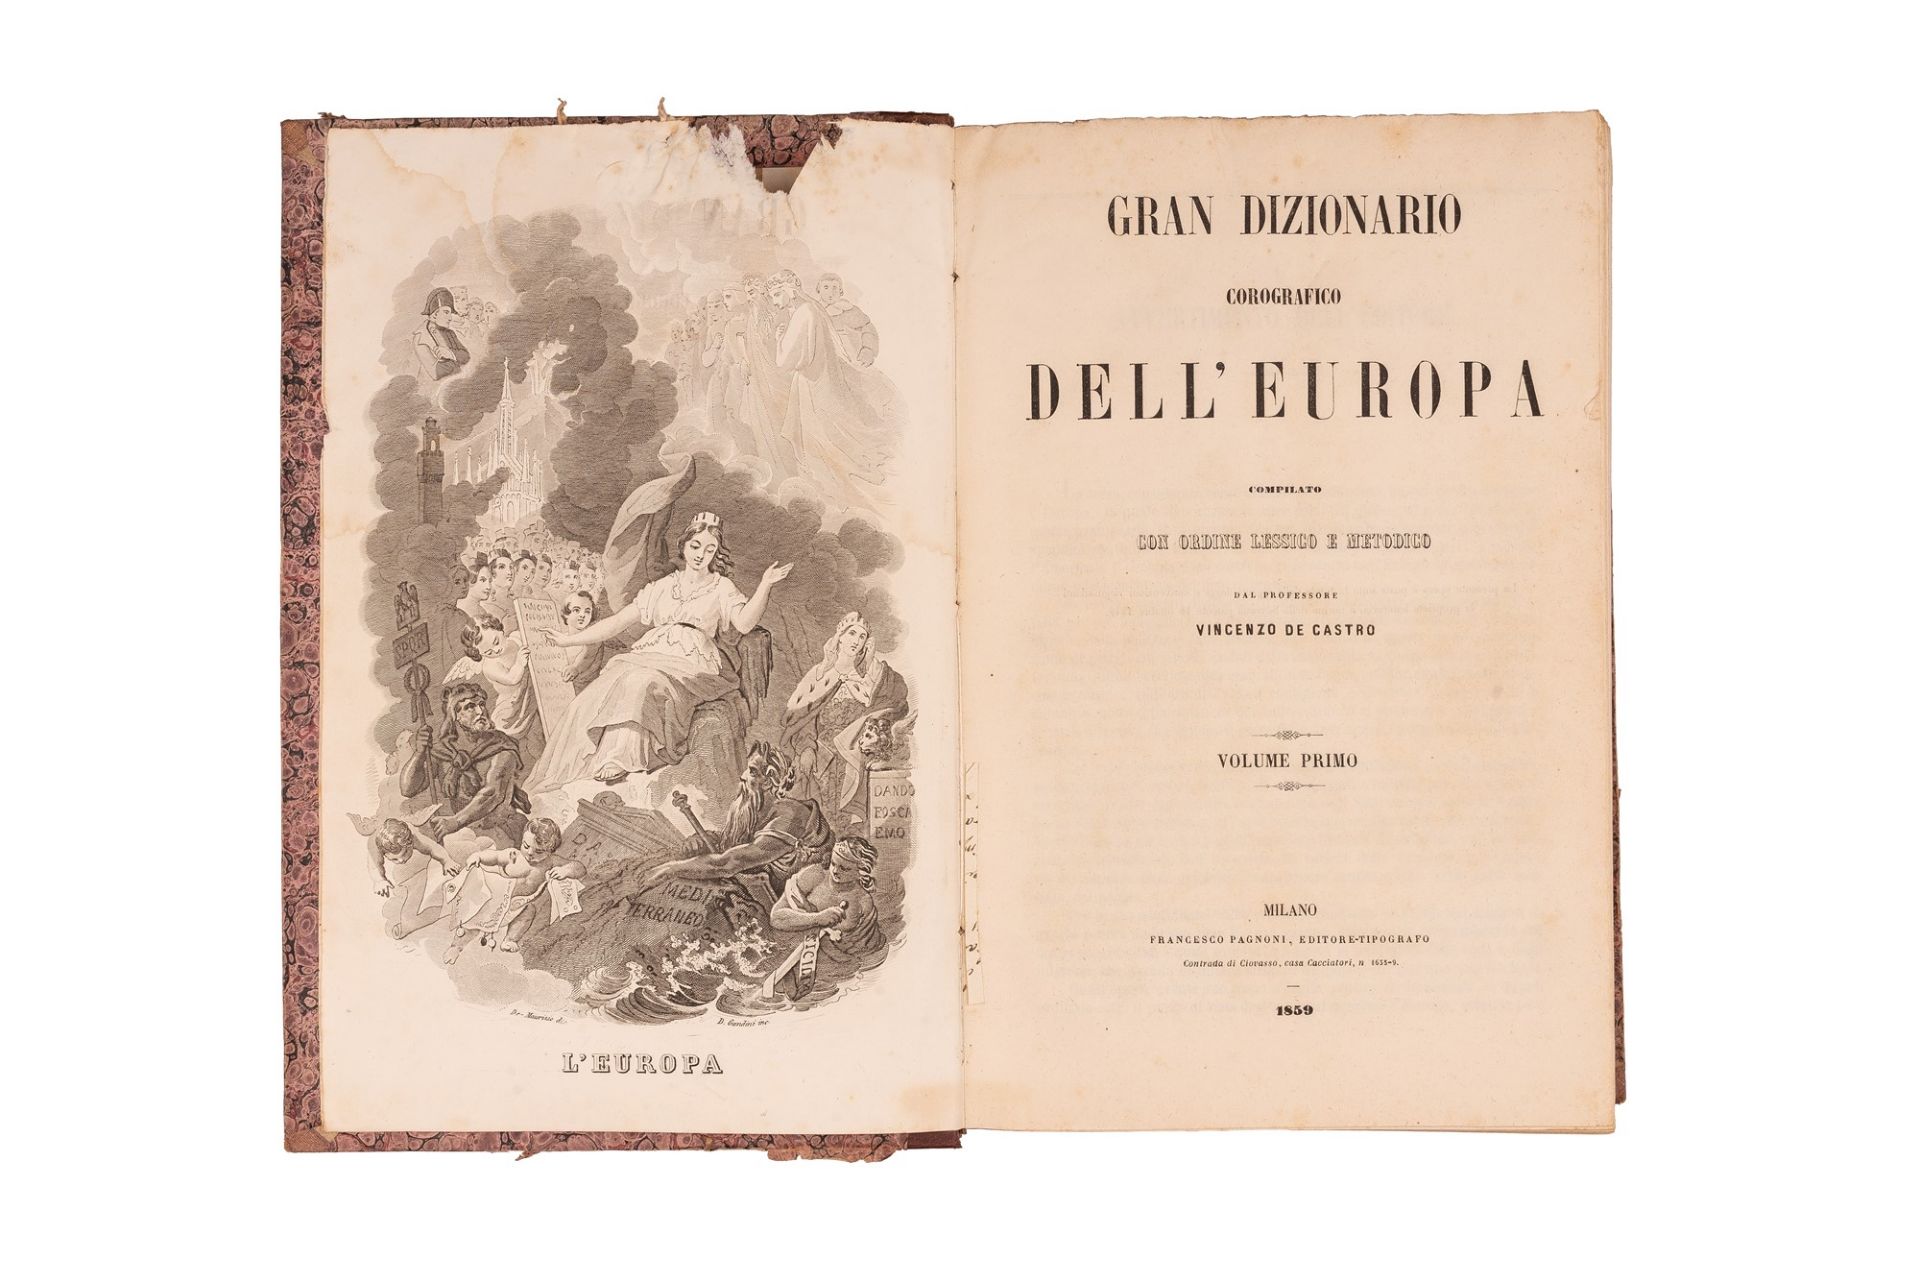  Gran dizionario corografico dell'Europa compilato con ordine lessico e metodico - Bild 3 aus 3